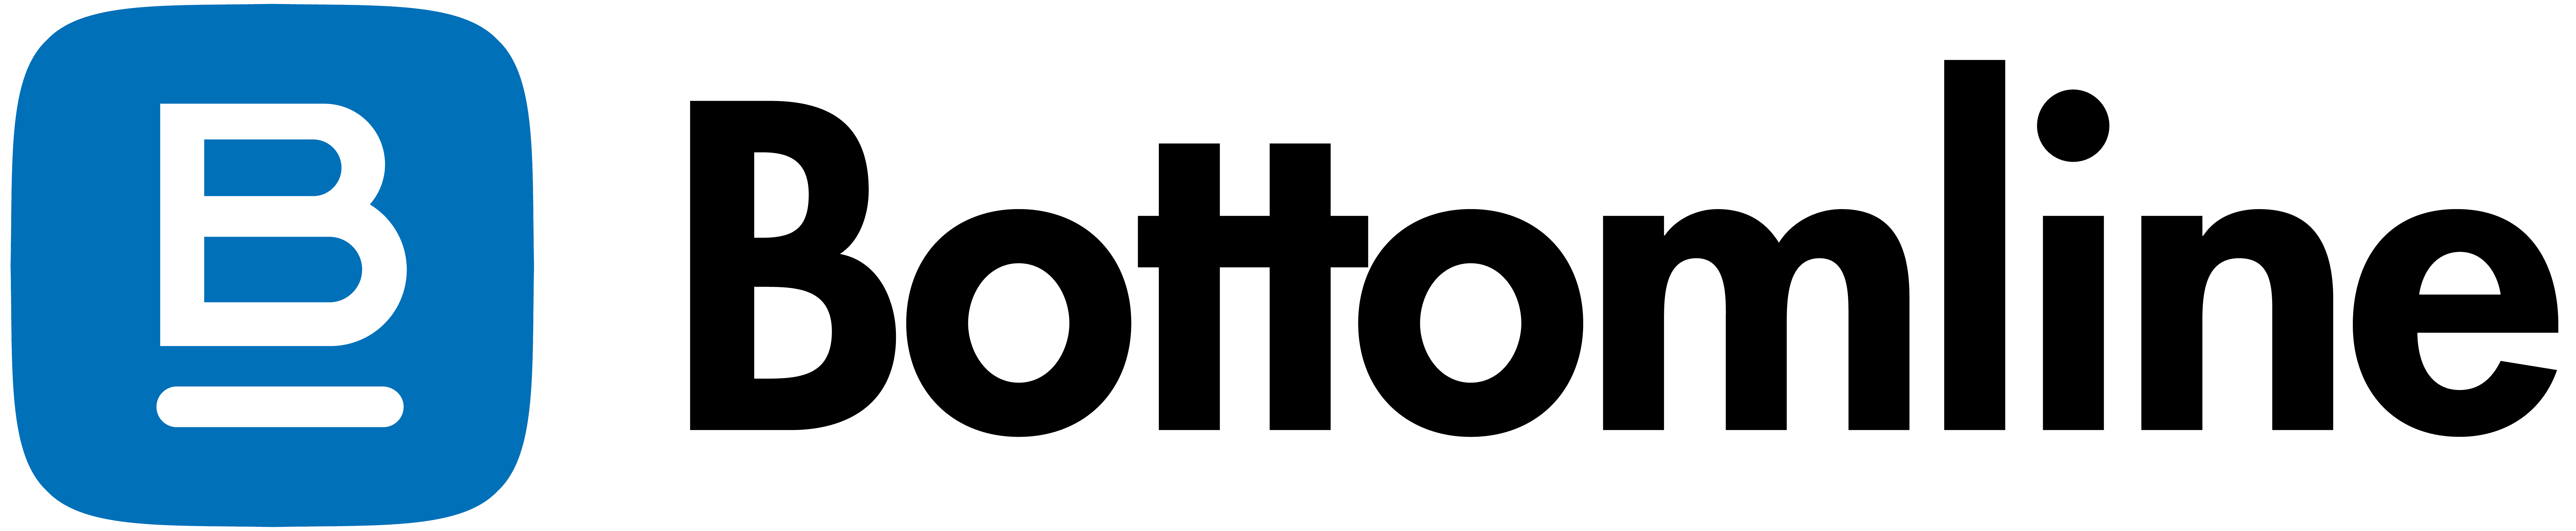 bottomline-logo-full-color